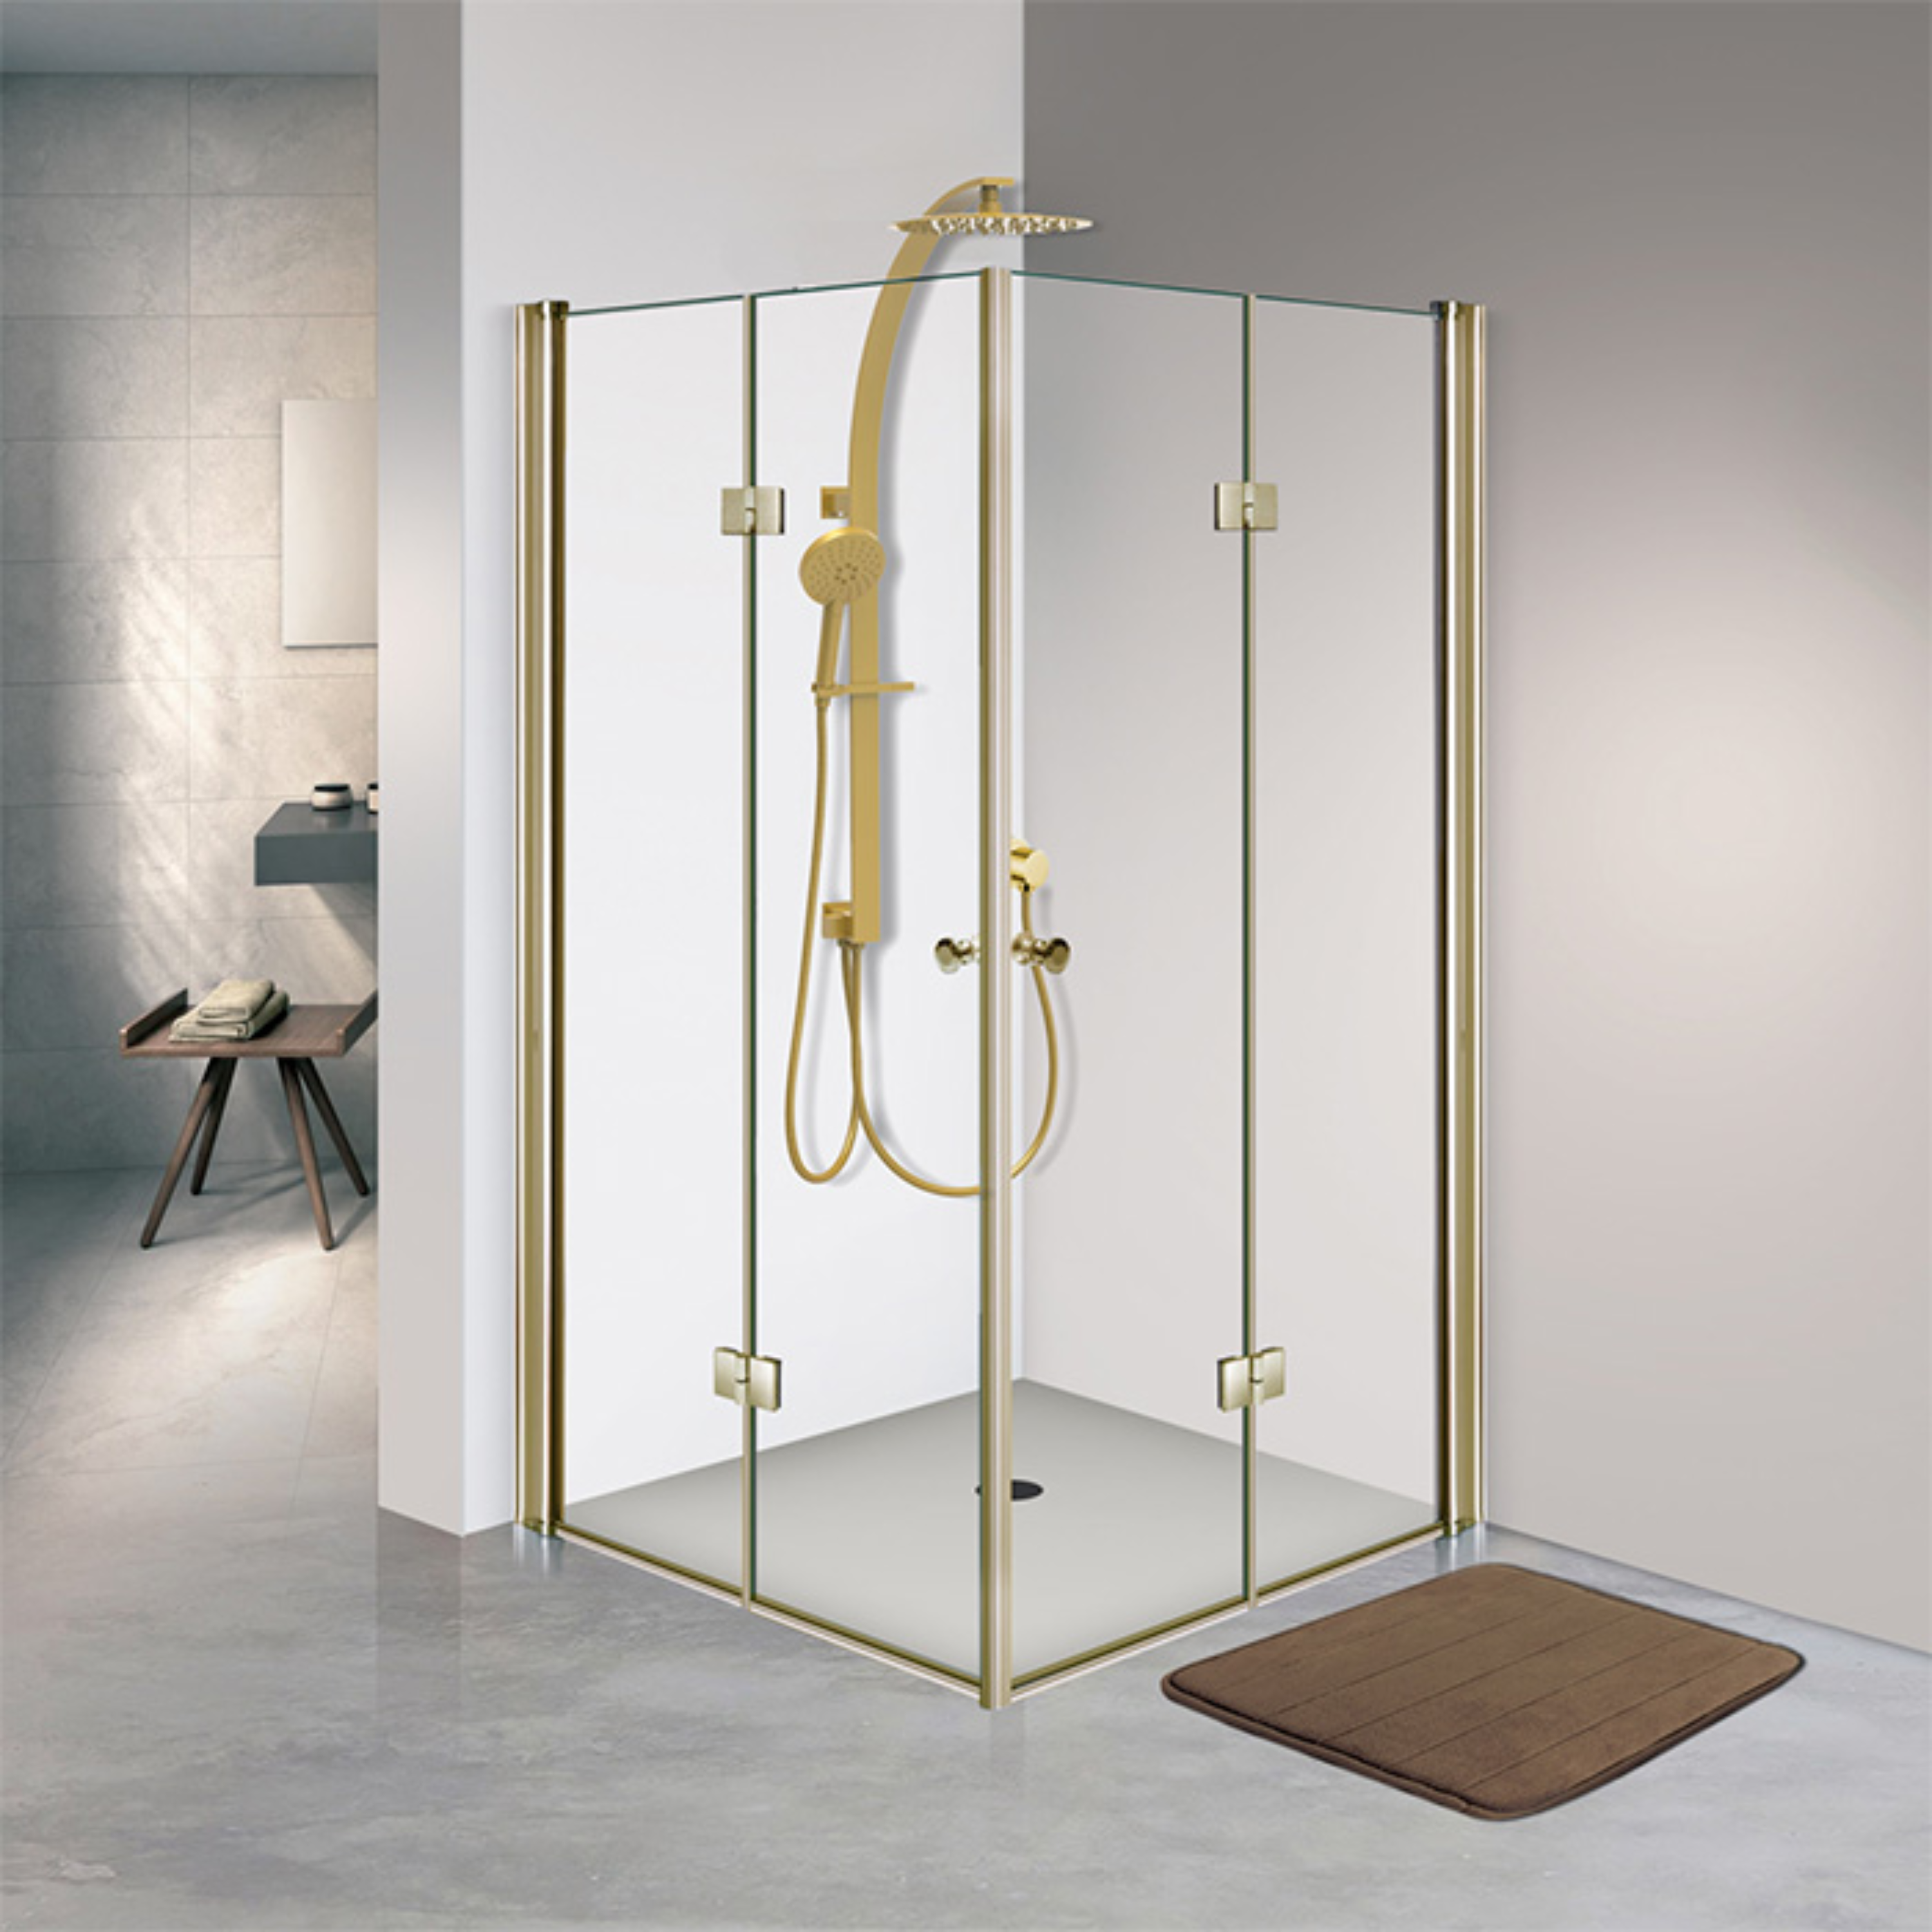 מקלחון פרזול זכוכית שקופה 77-80 ס"מ 409 Matina - צבע זהב